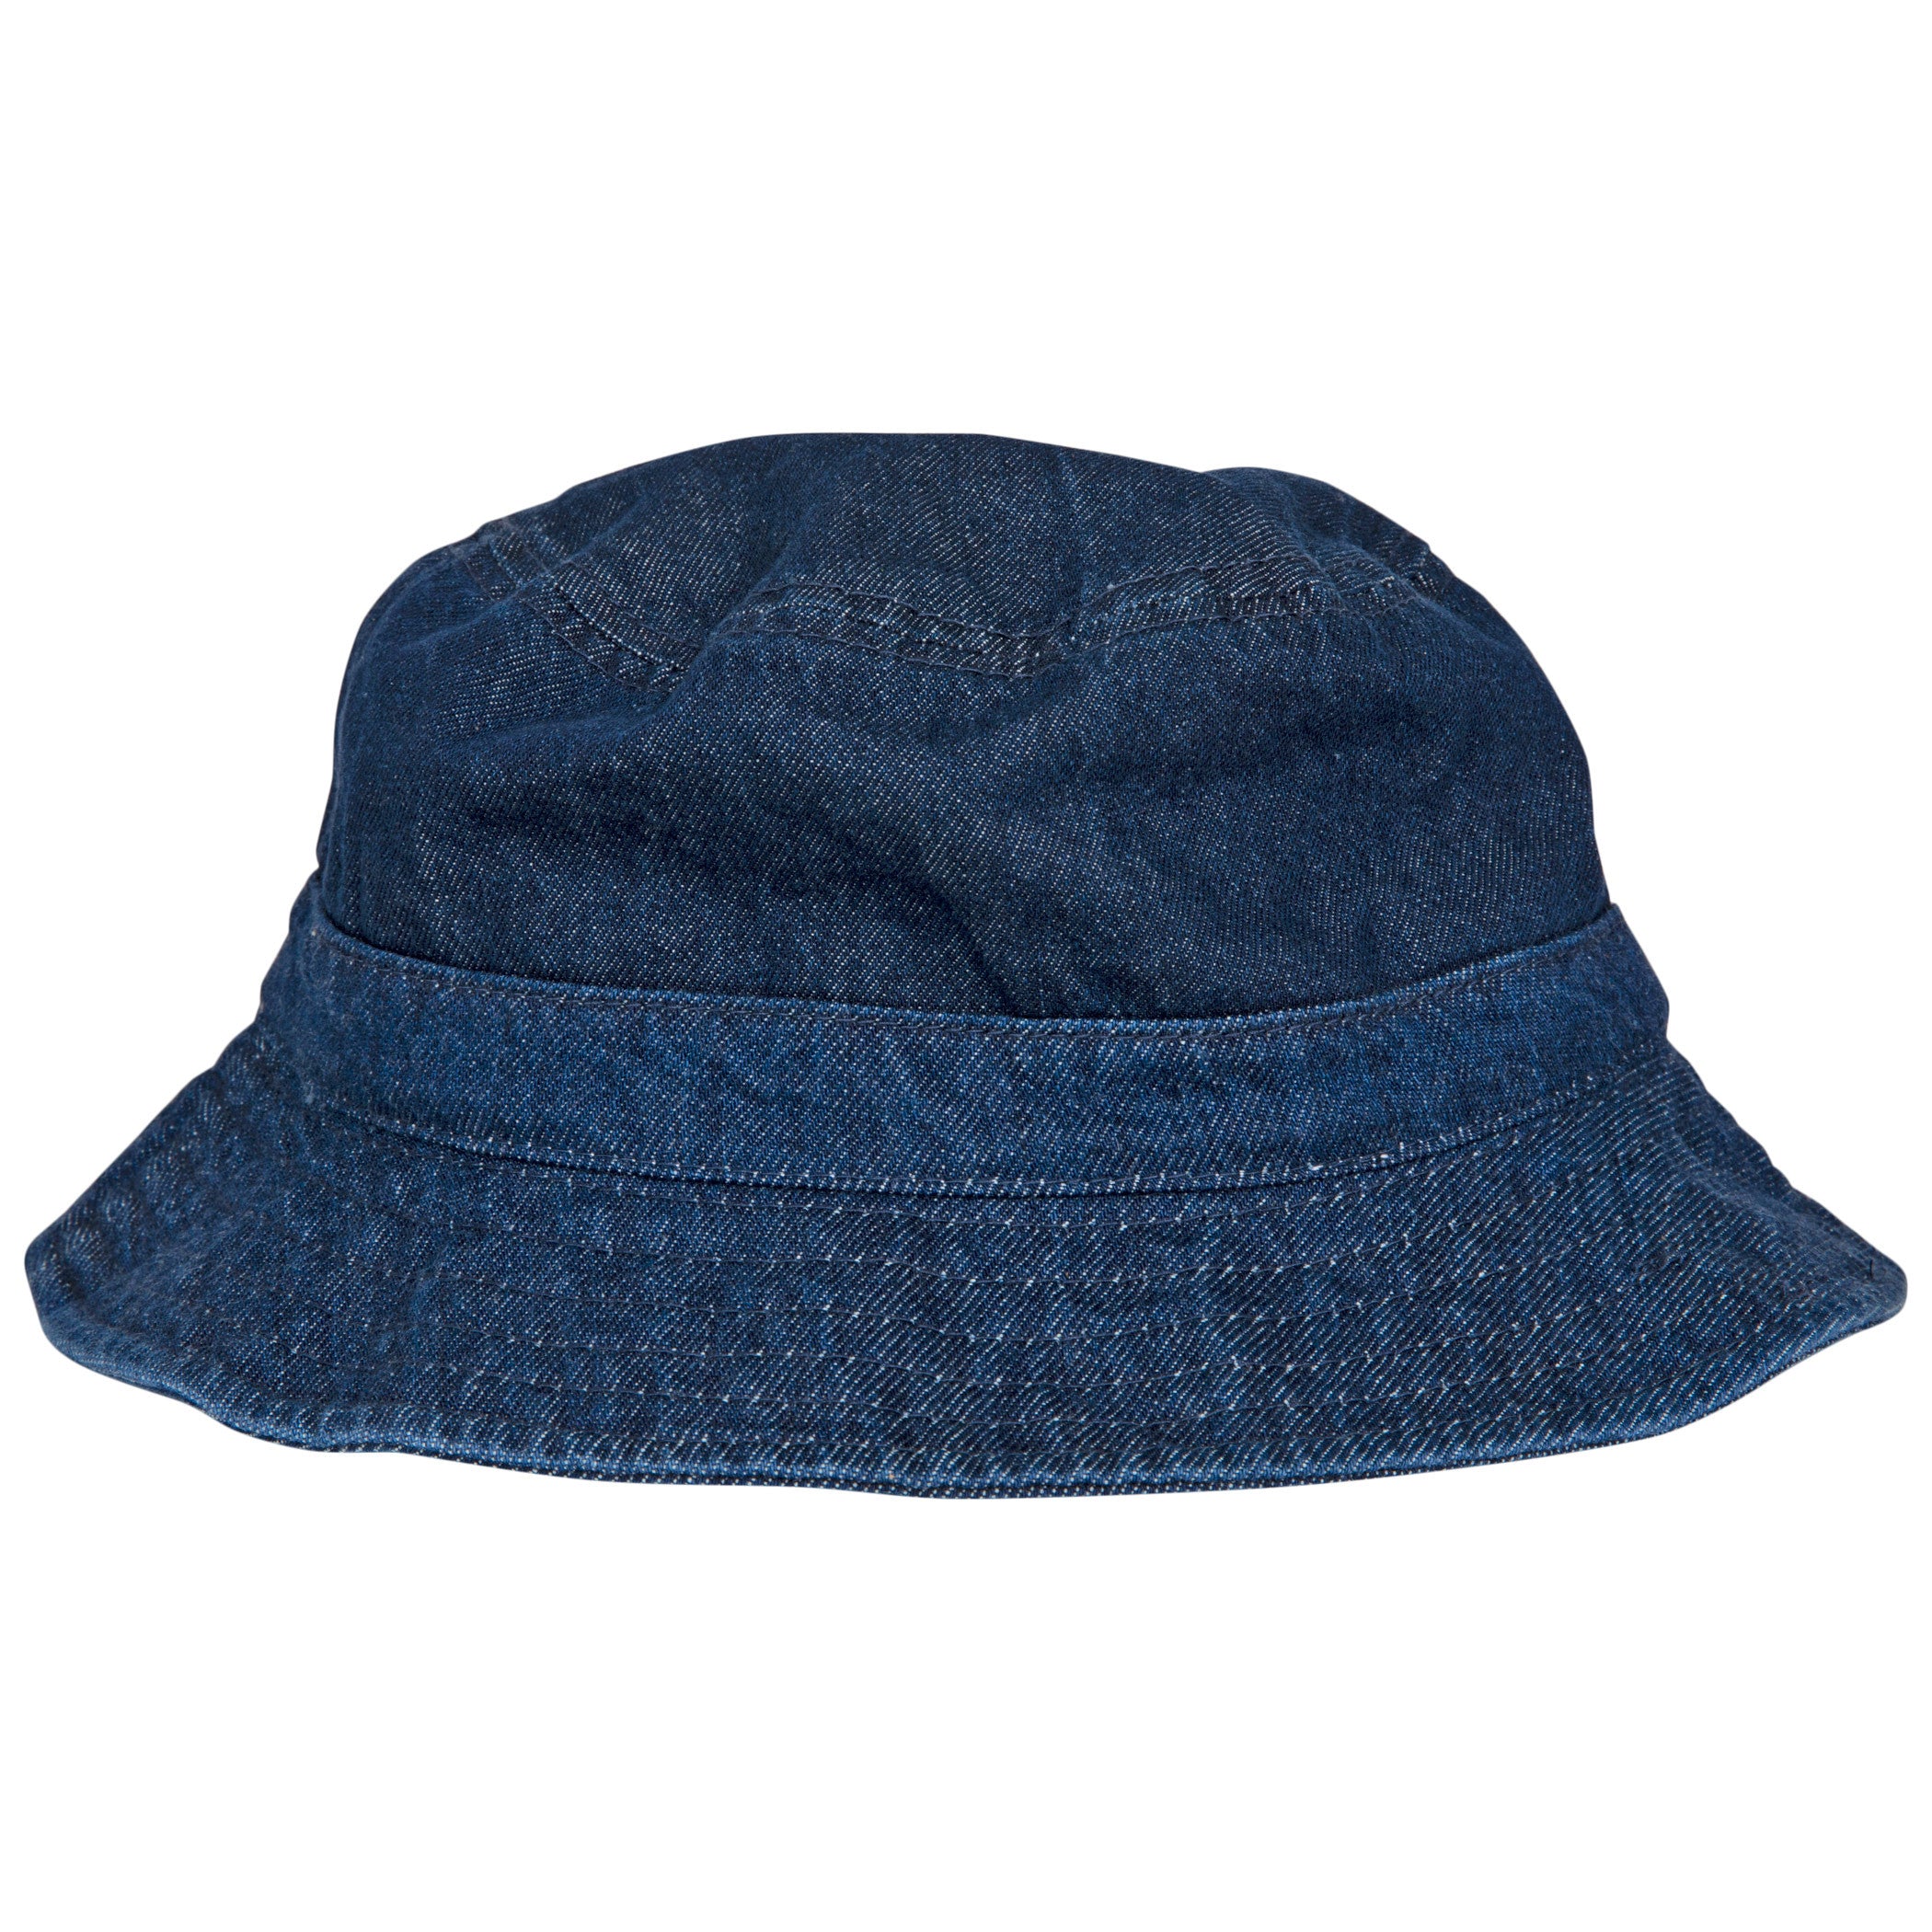 title:DC Comics Batman Symbol Denim Bucket Hat;color:Blue